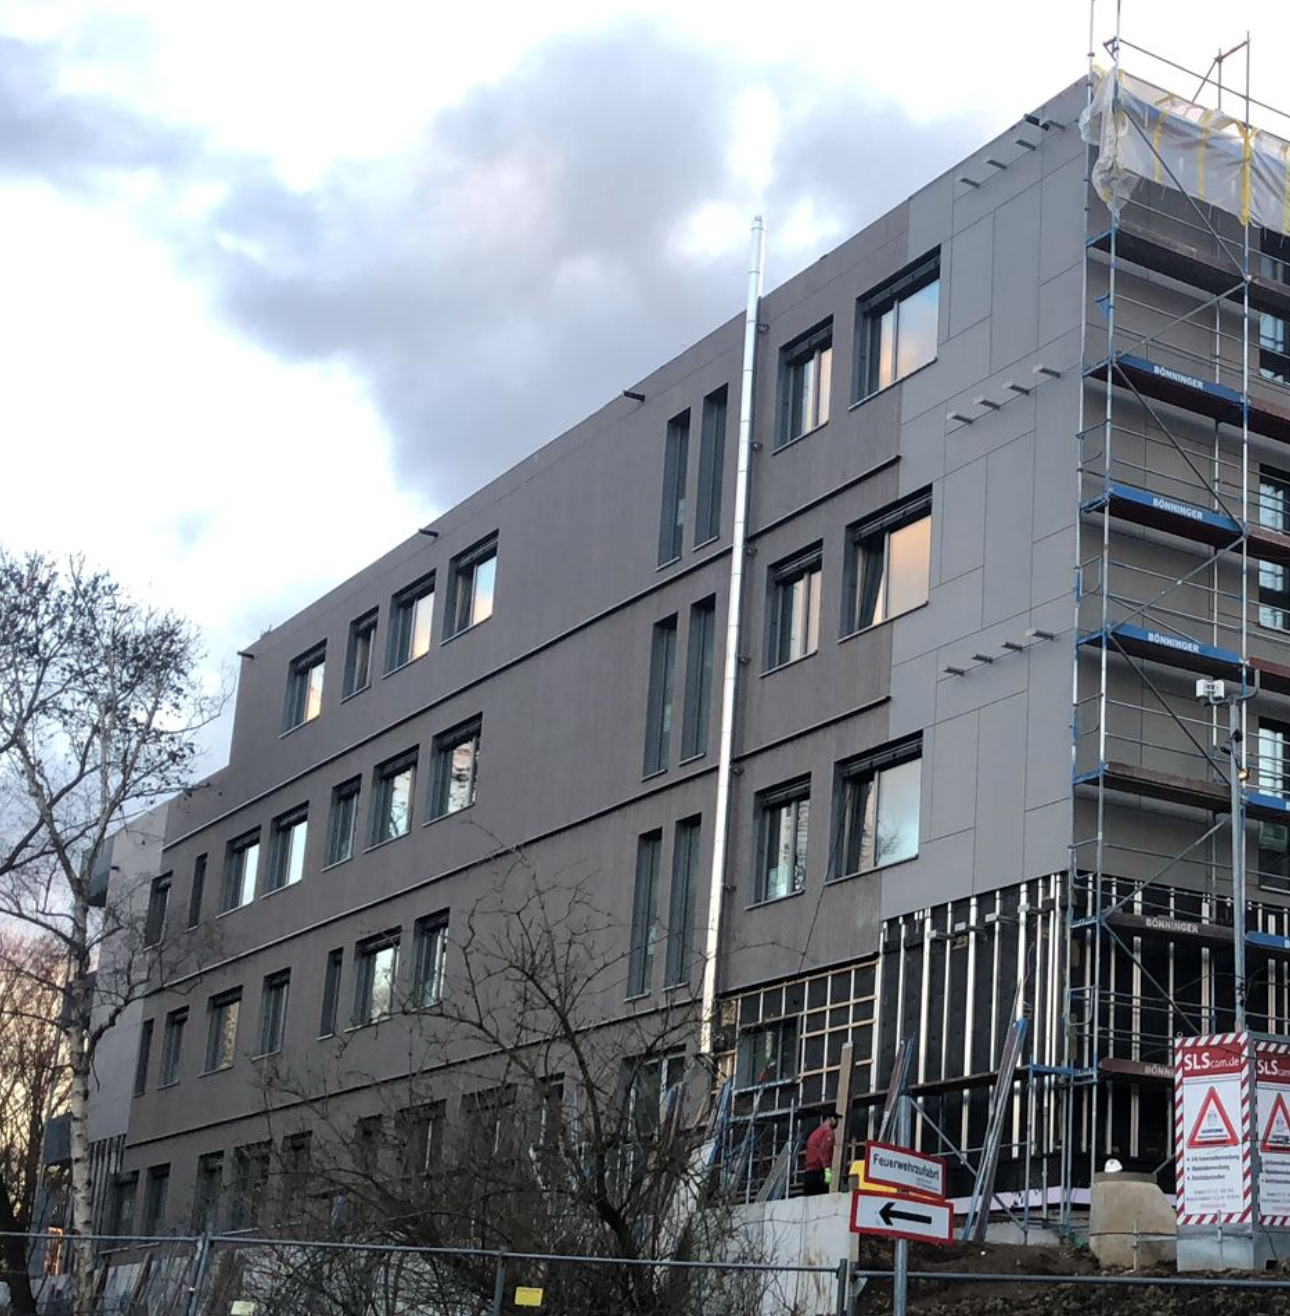 Max-Planck: Die Fassade wird fertig, es wird abgerüstet